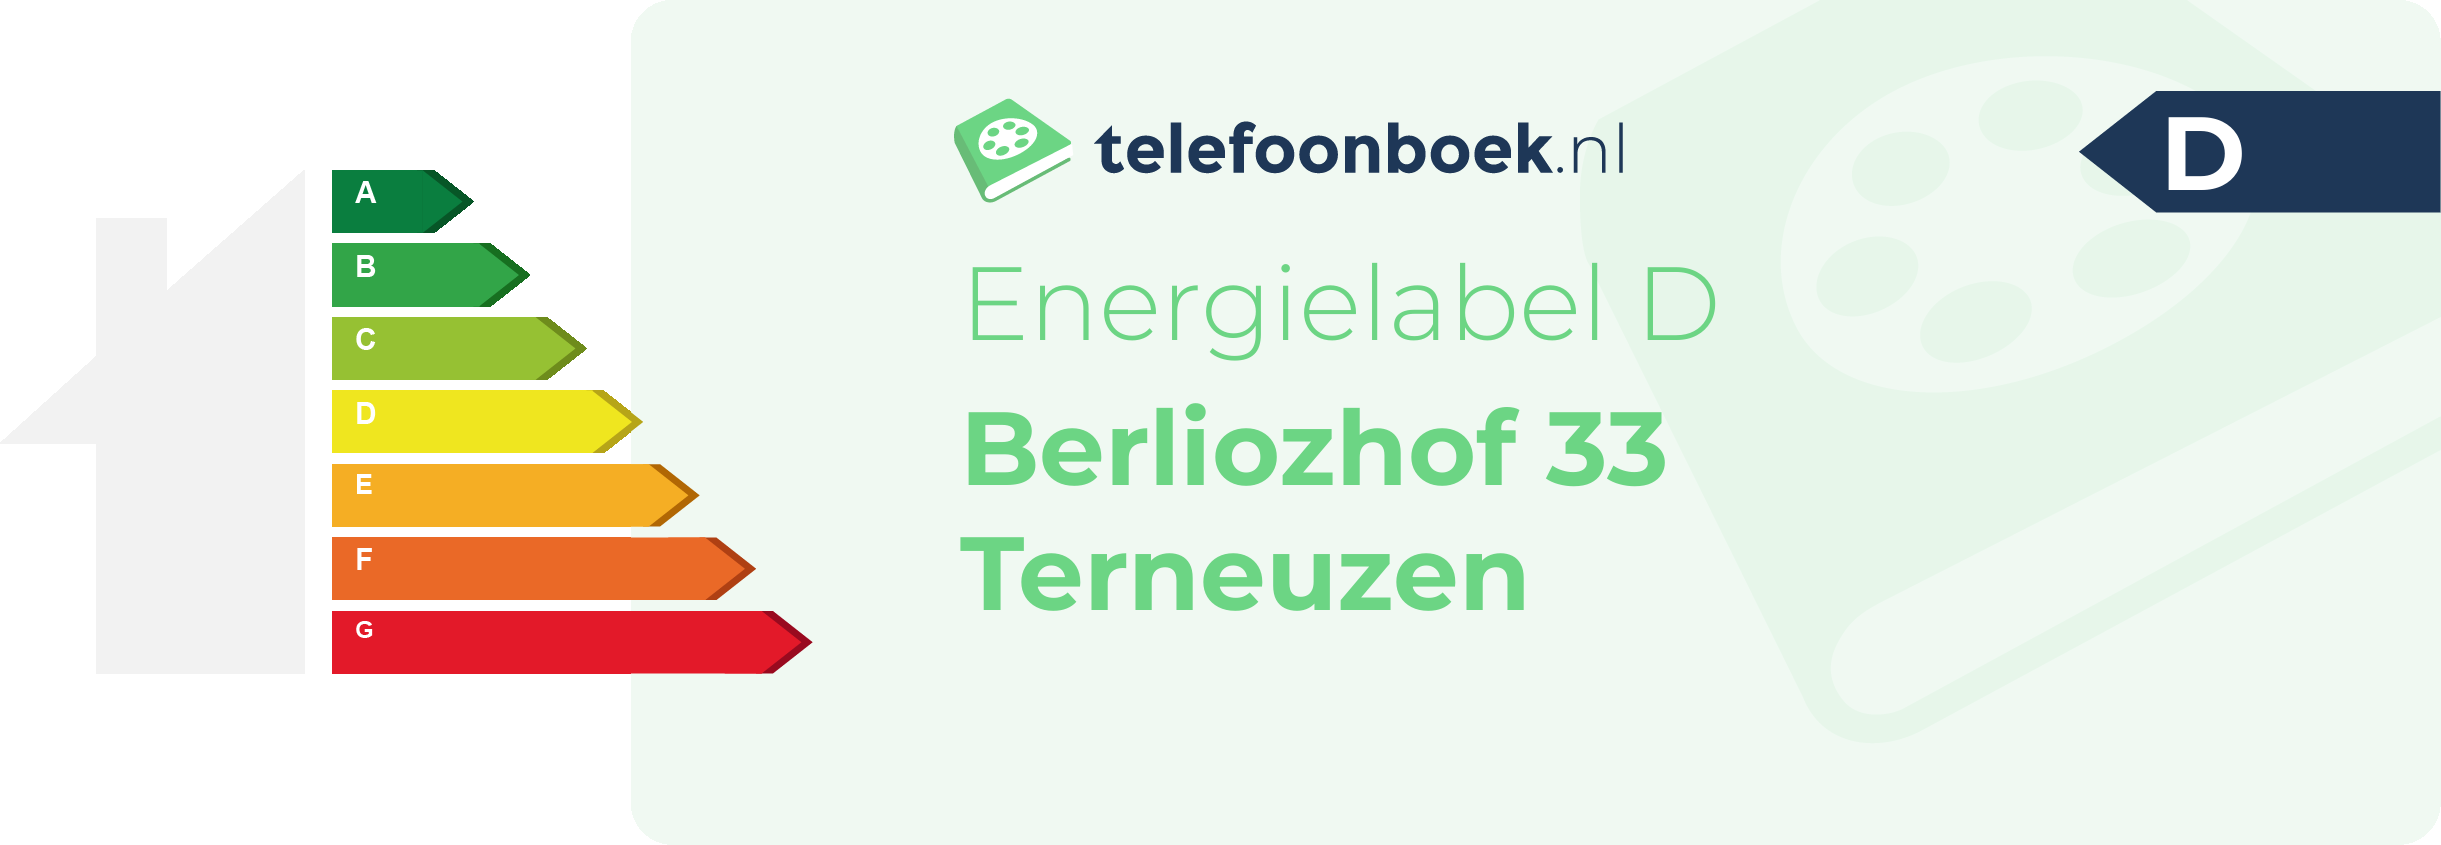 Energielabel Berliozhof 33 Terneuzen